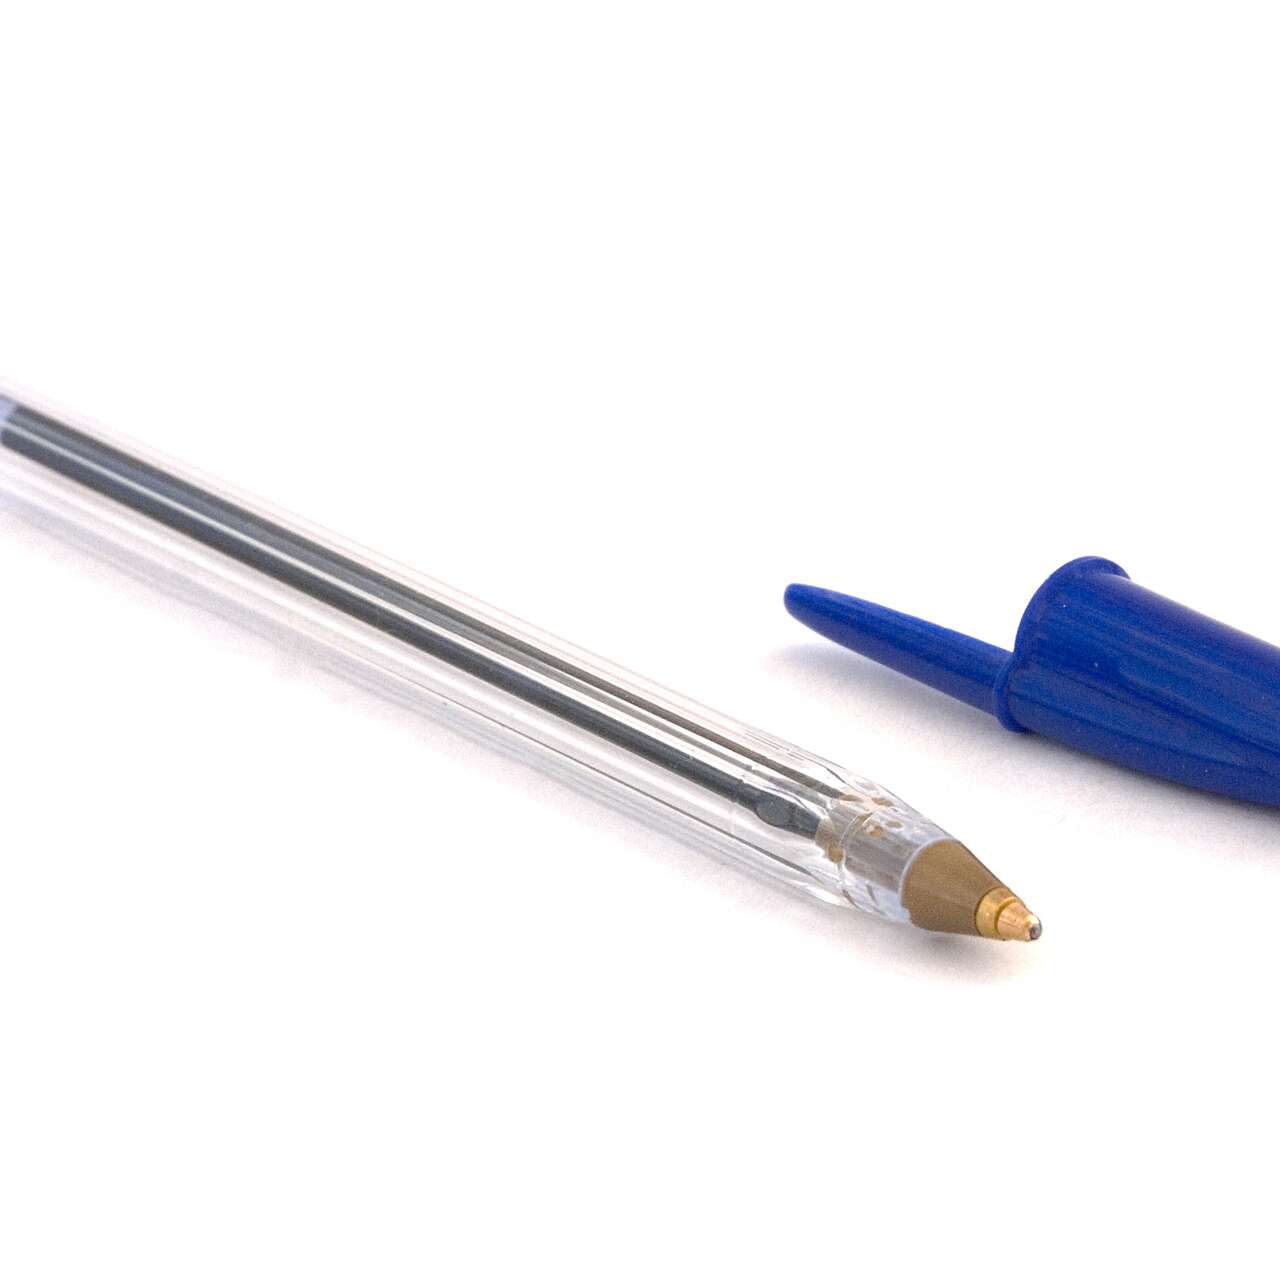 À quoi sert un stylo 3D?